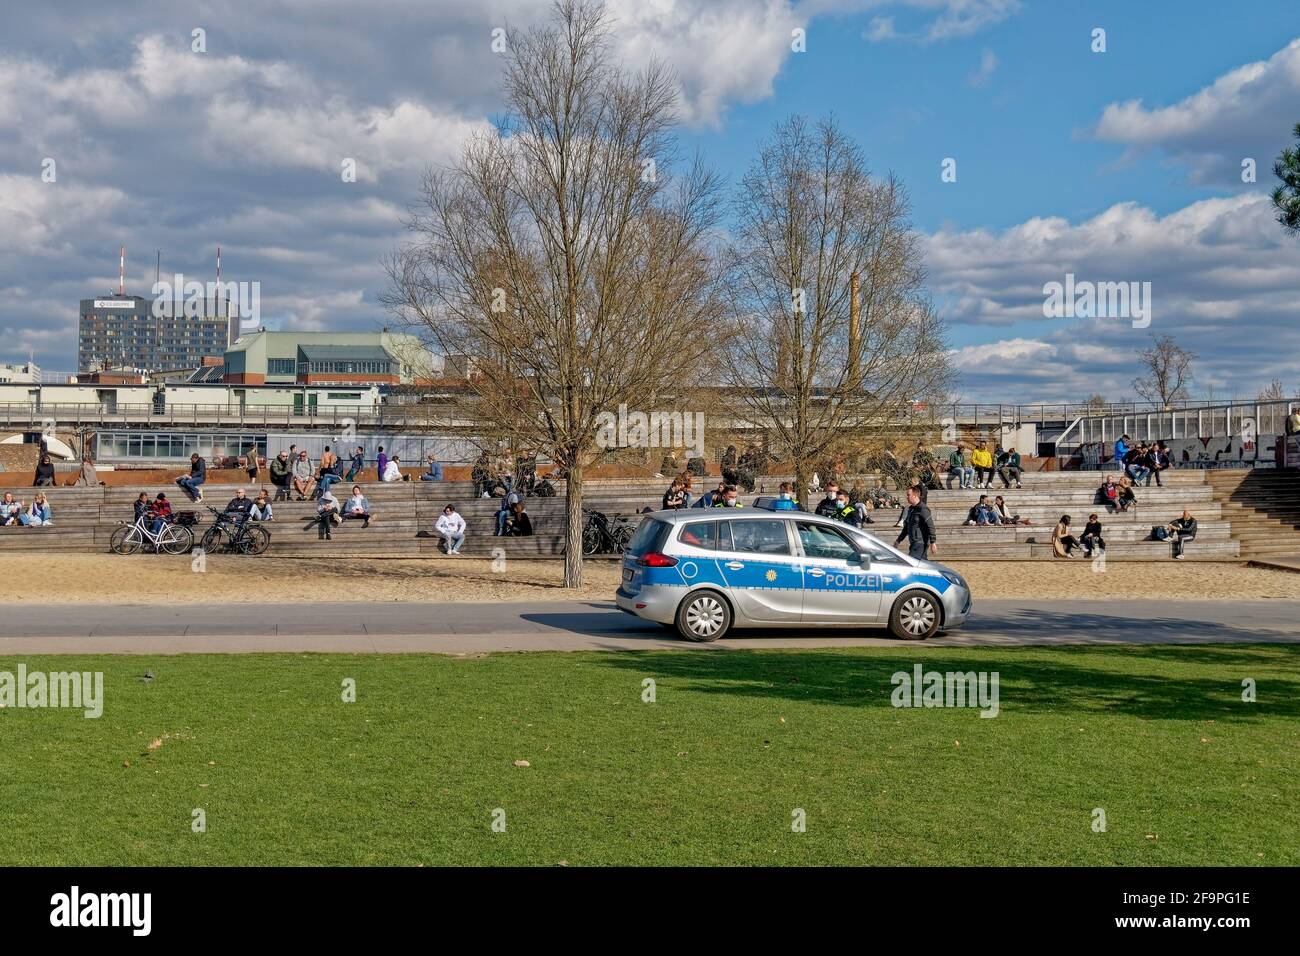 Park am Gleisdreieck, Polizeikontrolle zur Einhaltung der Corona-Regeln, Kreuzberg, Berlin, Deutschland Stock Photo